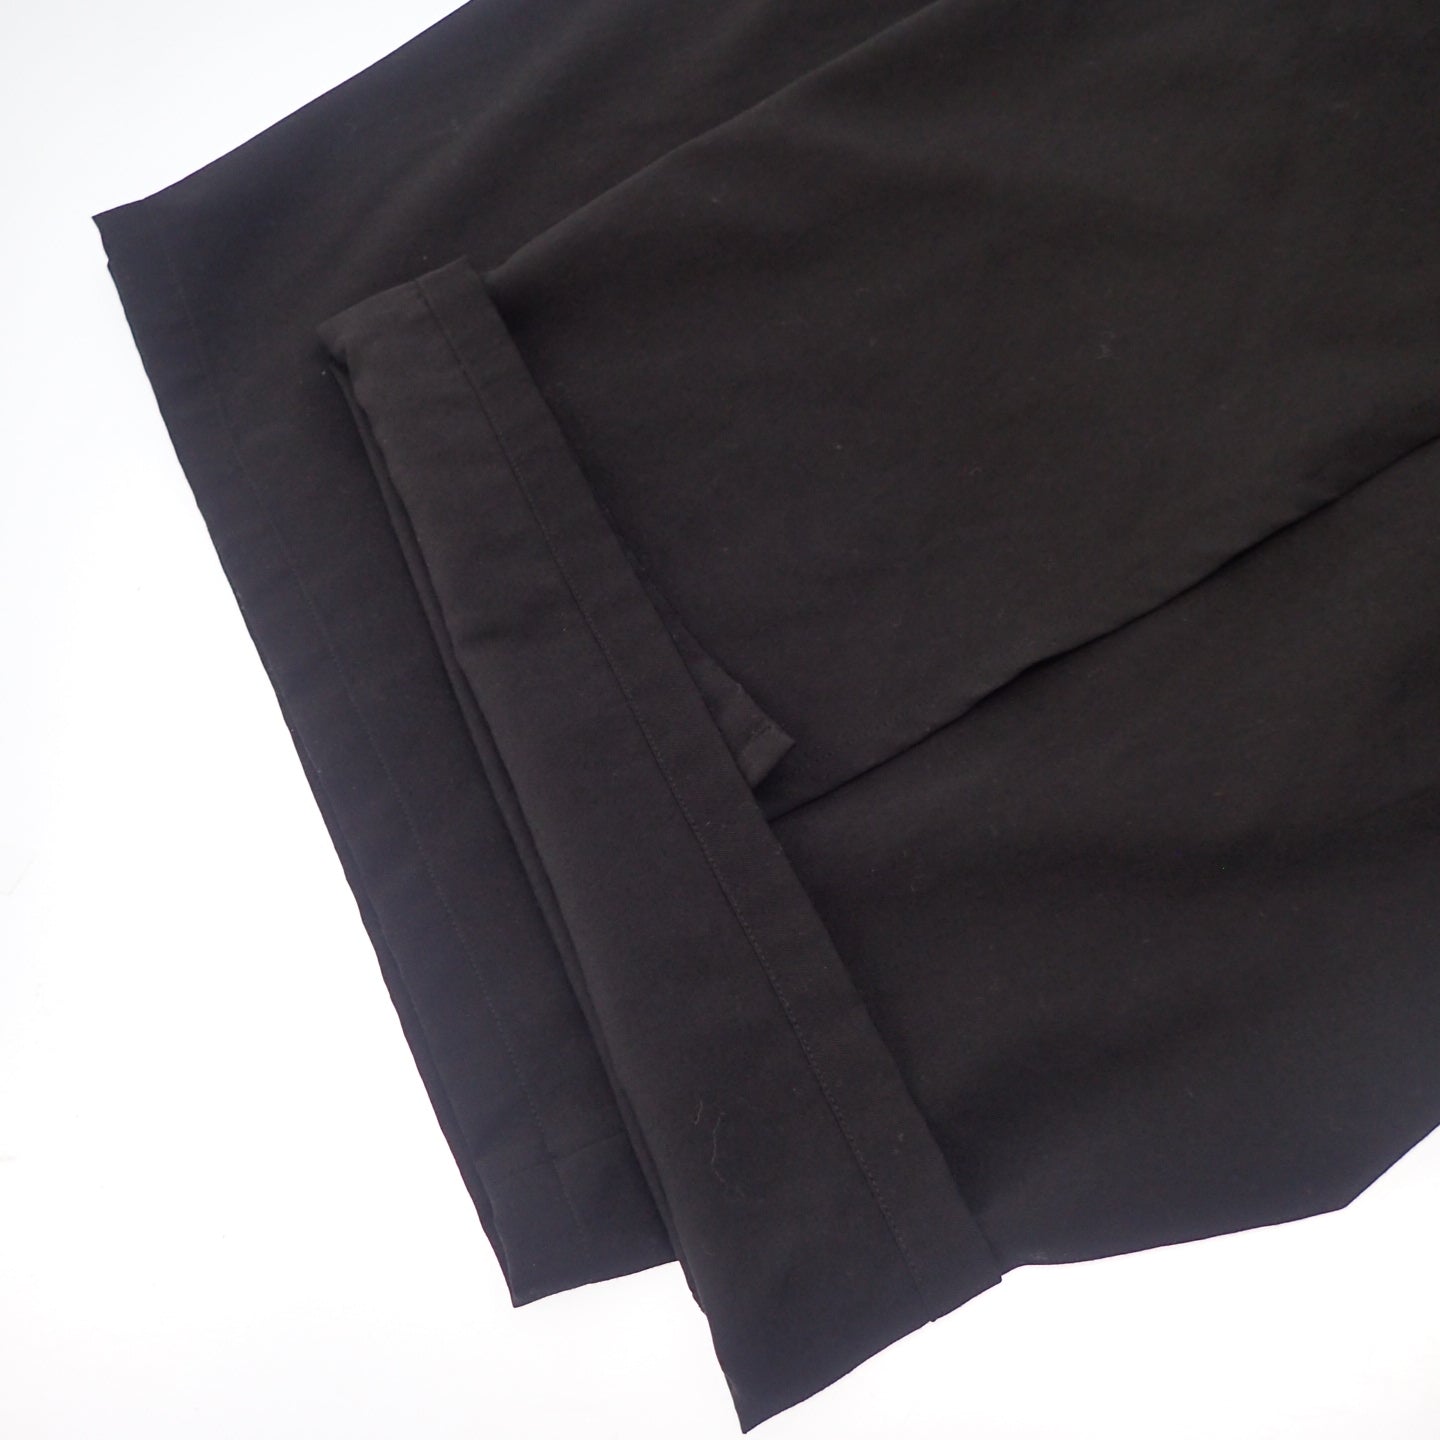 B Yohji Yamamoto 裙子长裤 NV-P61-100 男士黑色 1 B Yohji Yamamoto [AFB21] [二手] 